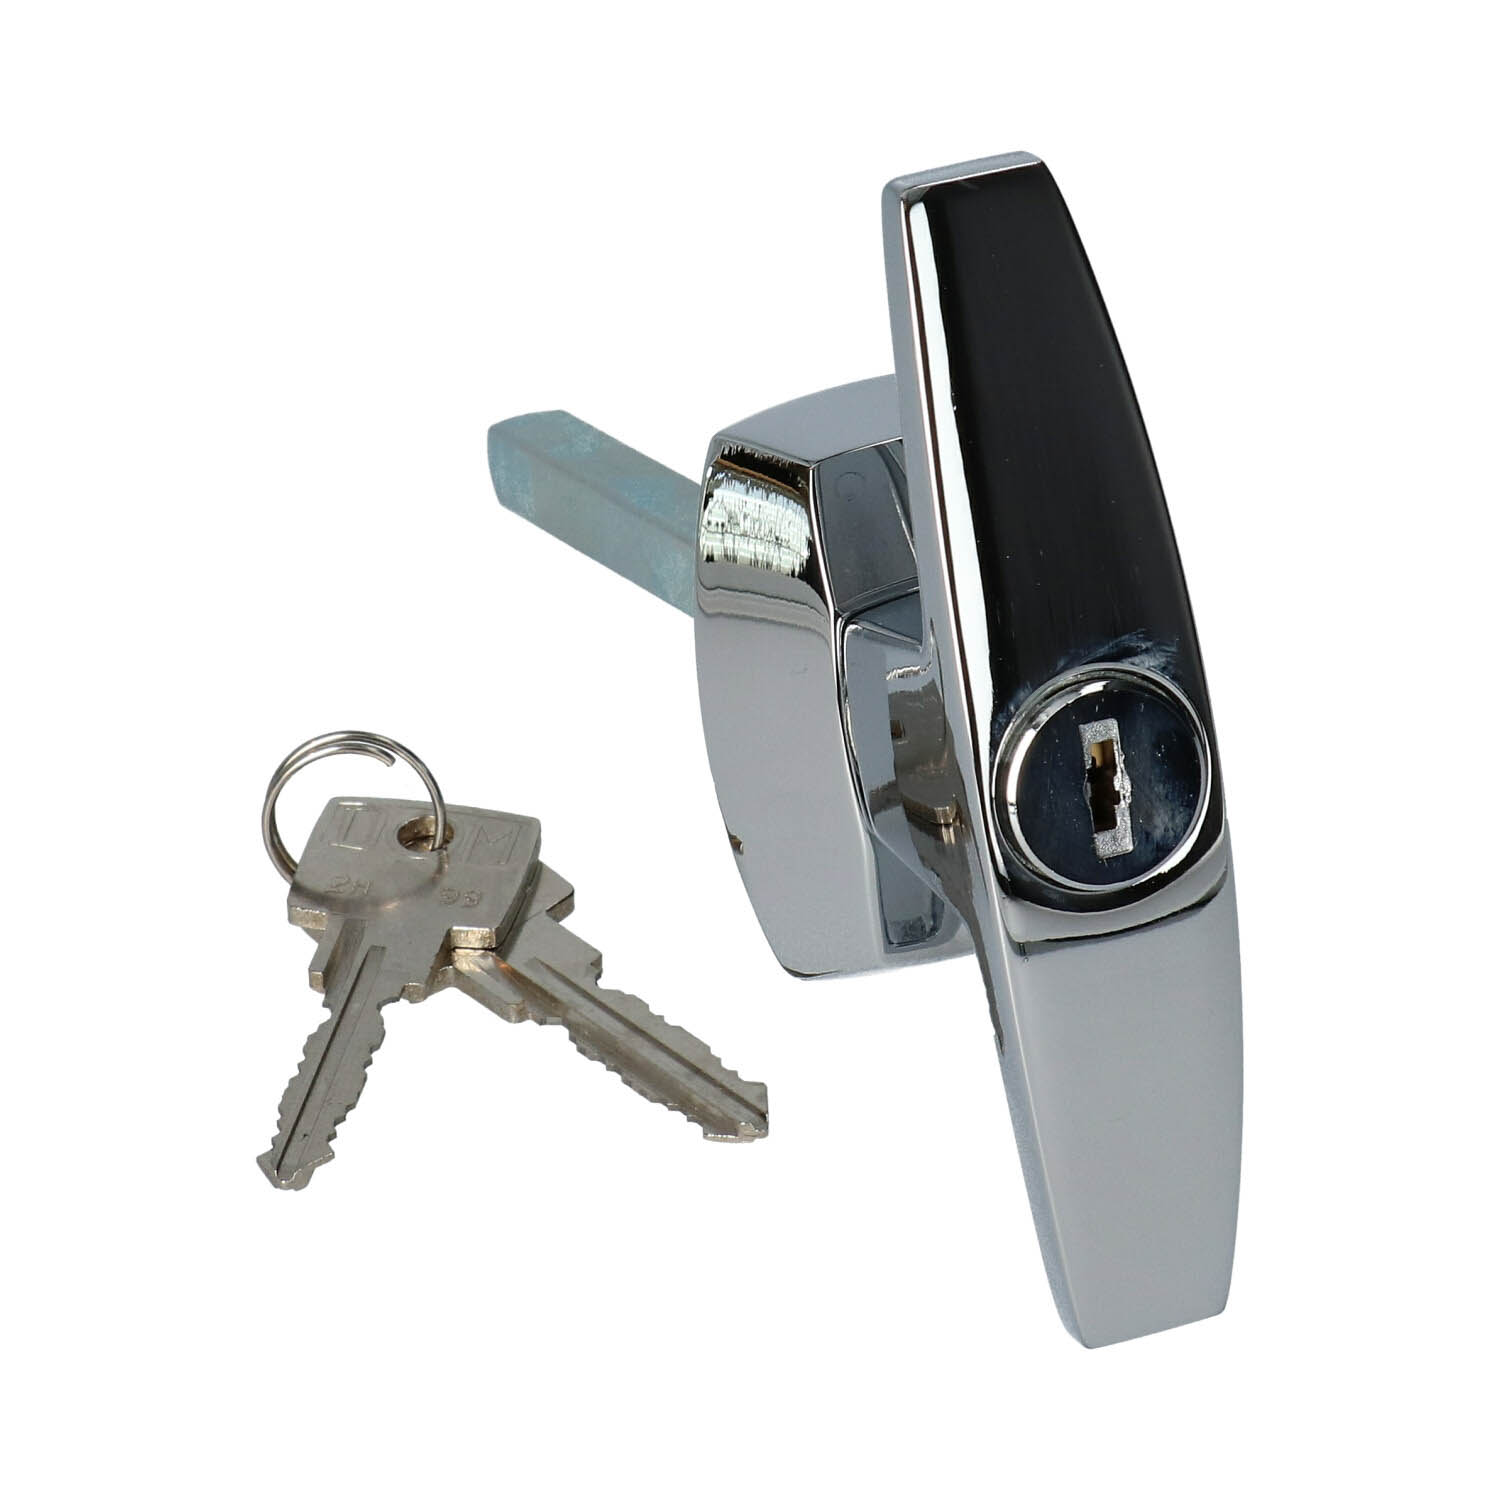 Menselijk ras Voorvoegsel spectrum DOM kruk met ingebouwde cilinder voor garagepoort - Inclusief 2 sleutels